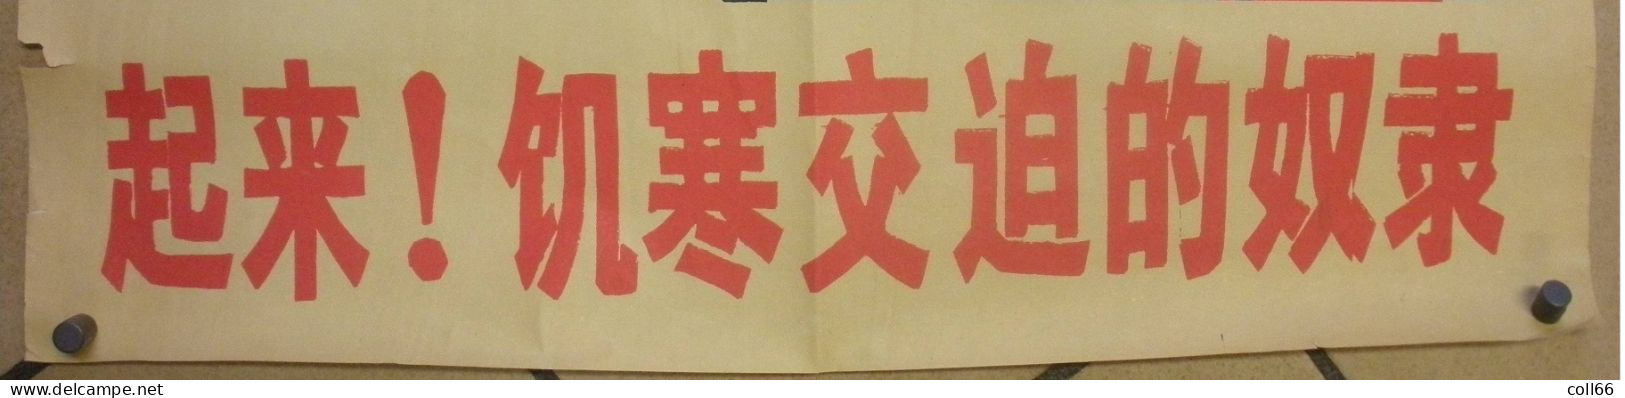 Affiche Propagande Communiste Chine Mao Soldats Rompant Ses Chaines 51x74.5 Cm Port Franco Suivii - Historical Documents